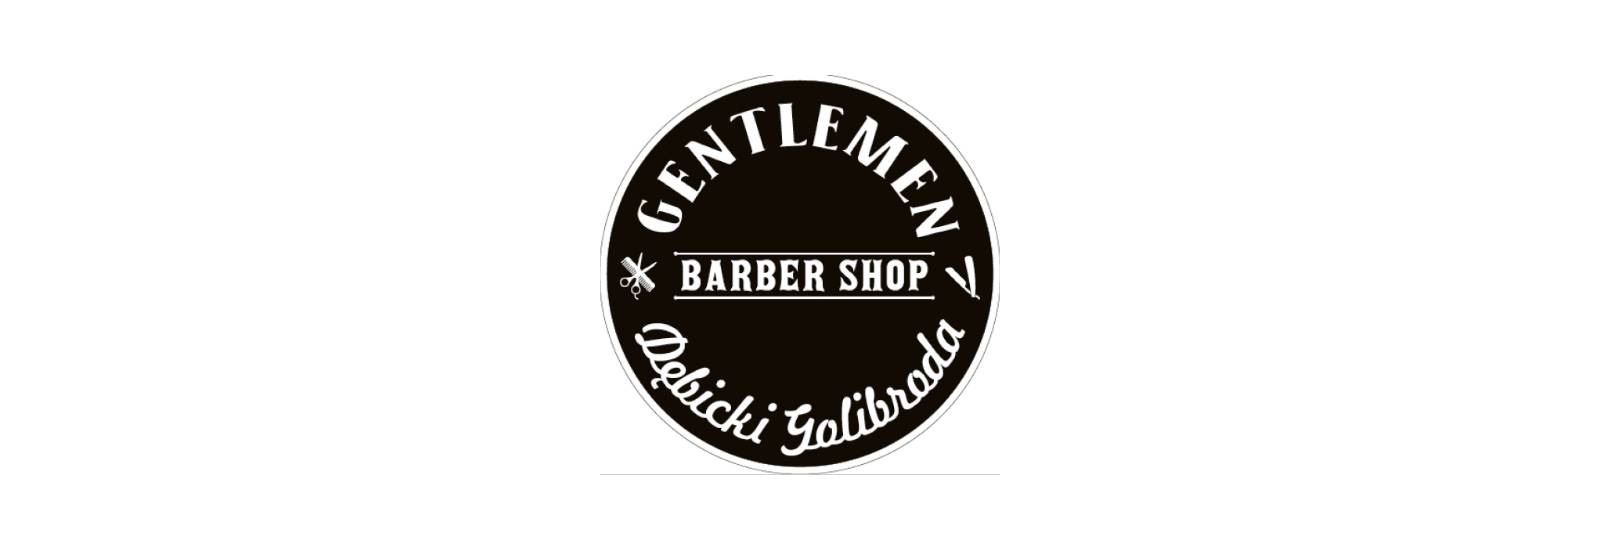 Gentlemen Barber Shop Dębica- Rynek, Dębica, niestandardowe-wymiary-1600x800-px